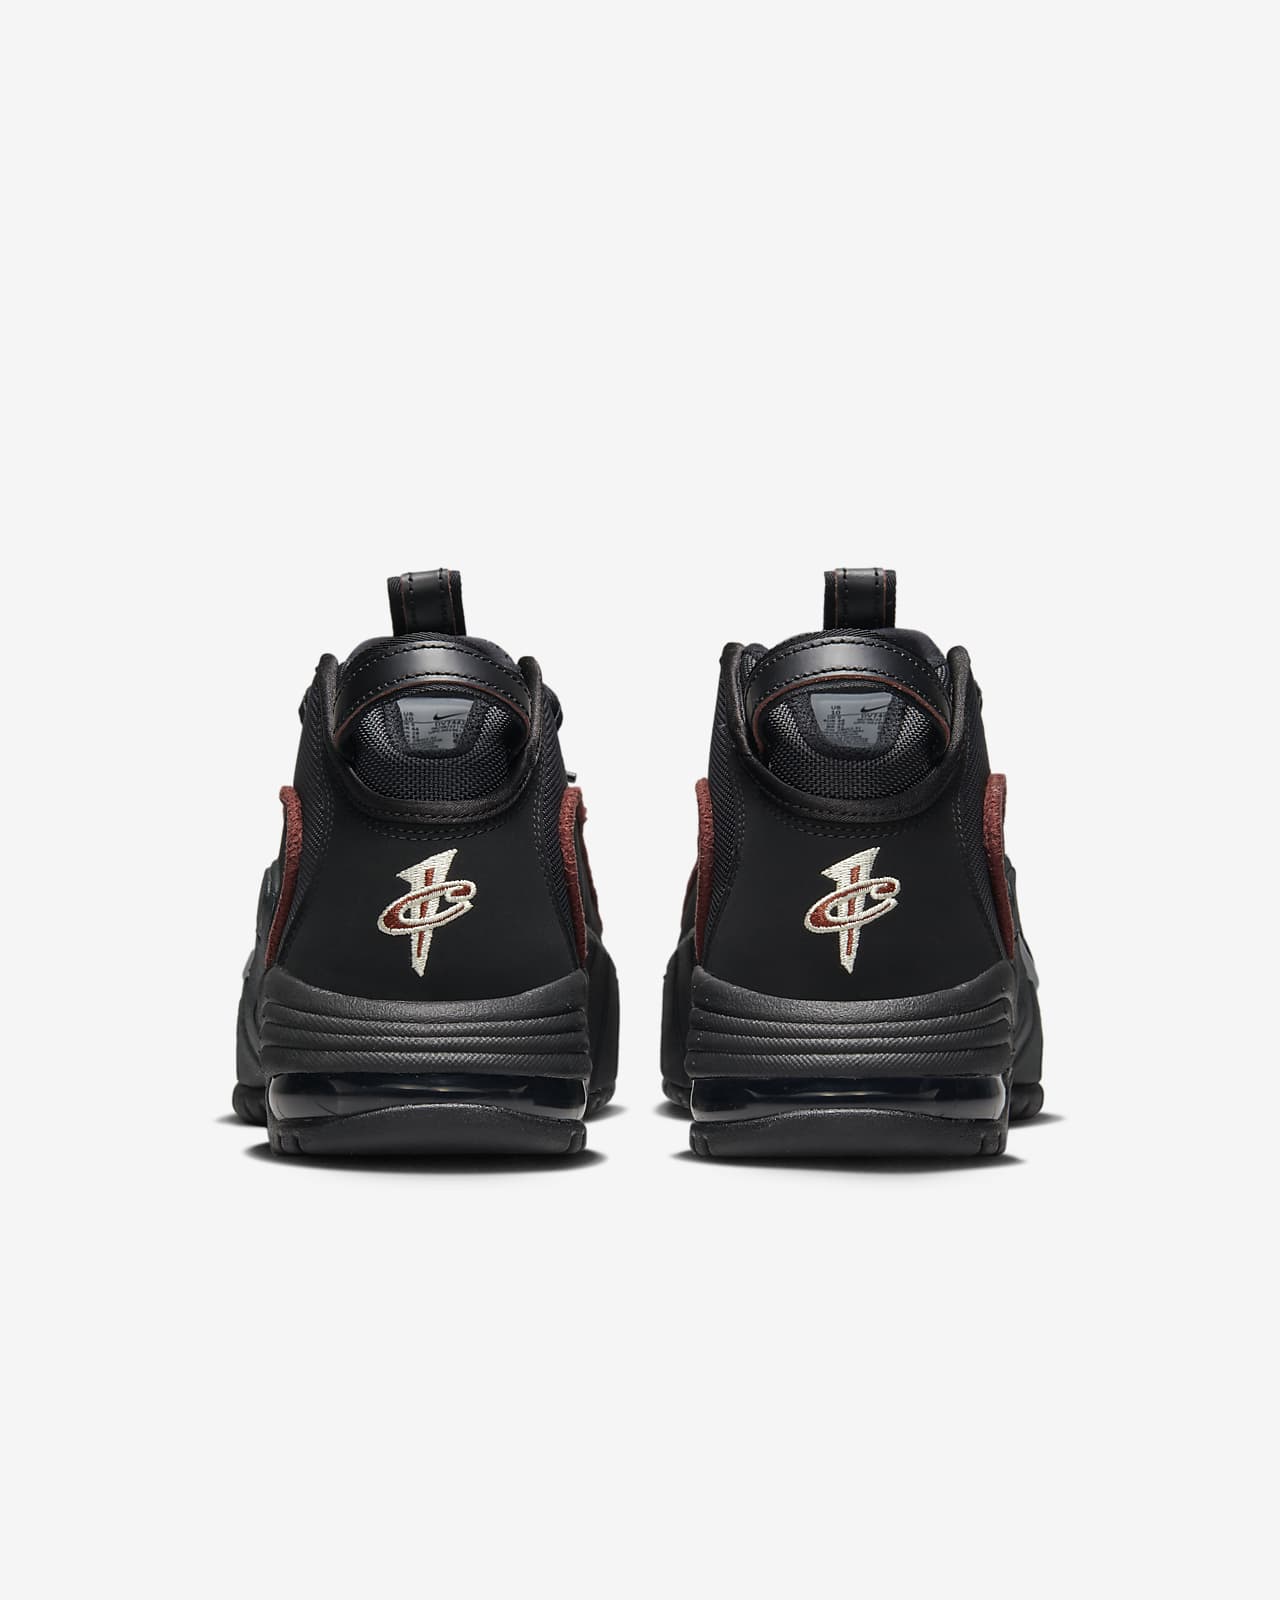 Vintage 1998 Nike Air Penny Hardaway IV Basketball Shoes OG Size 9.5 Jordan